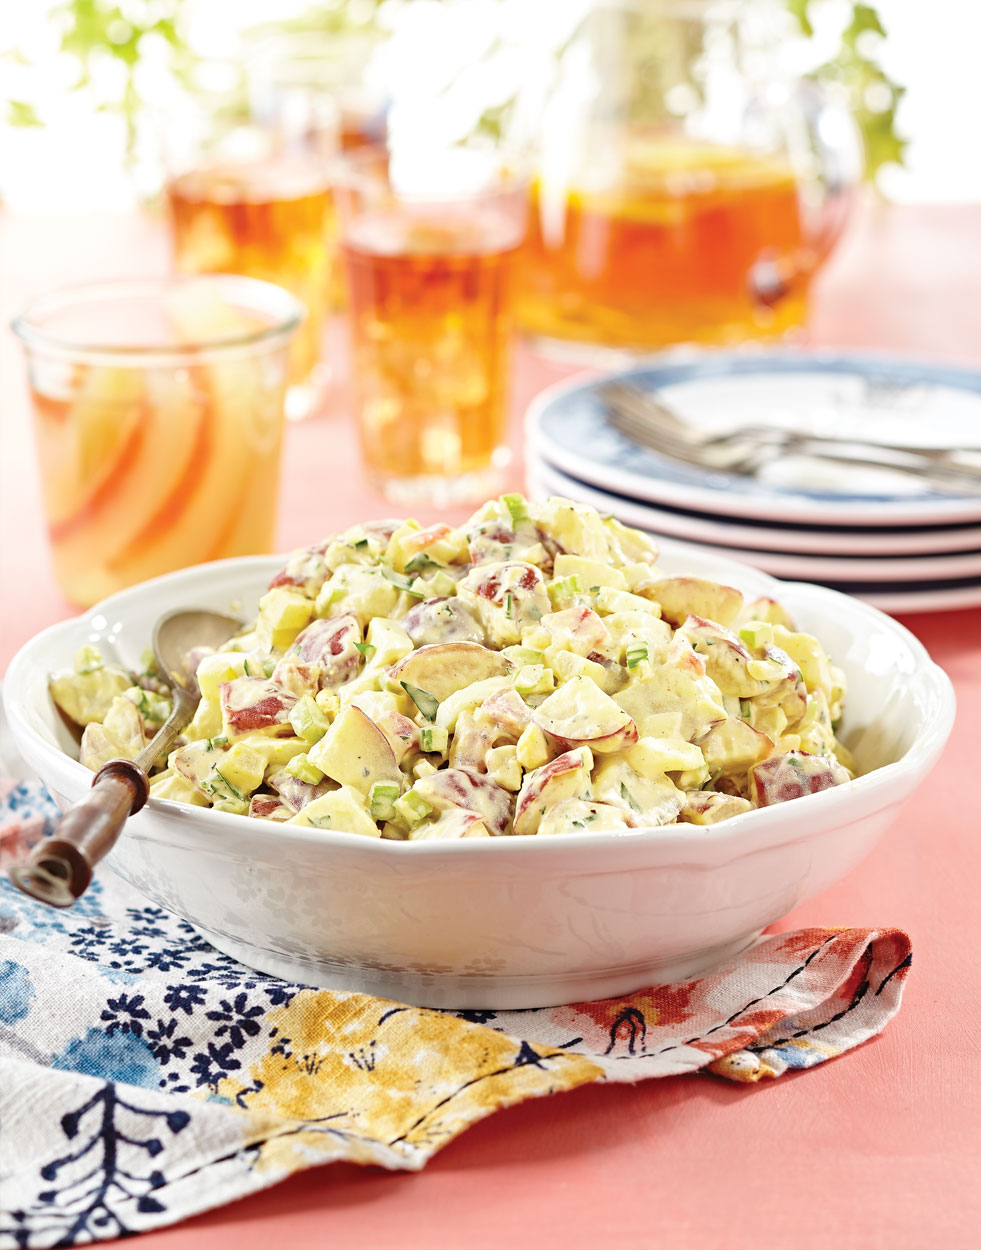 Creamy Potato Salad with watermelon pickles Recipe